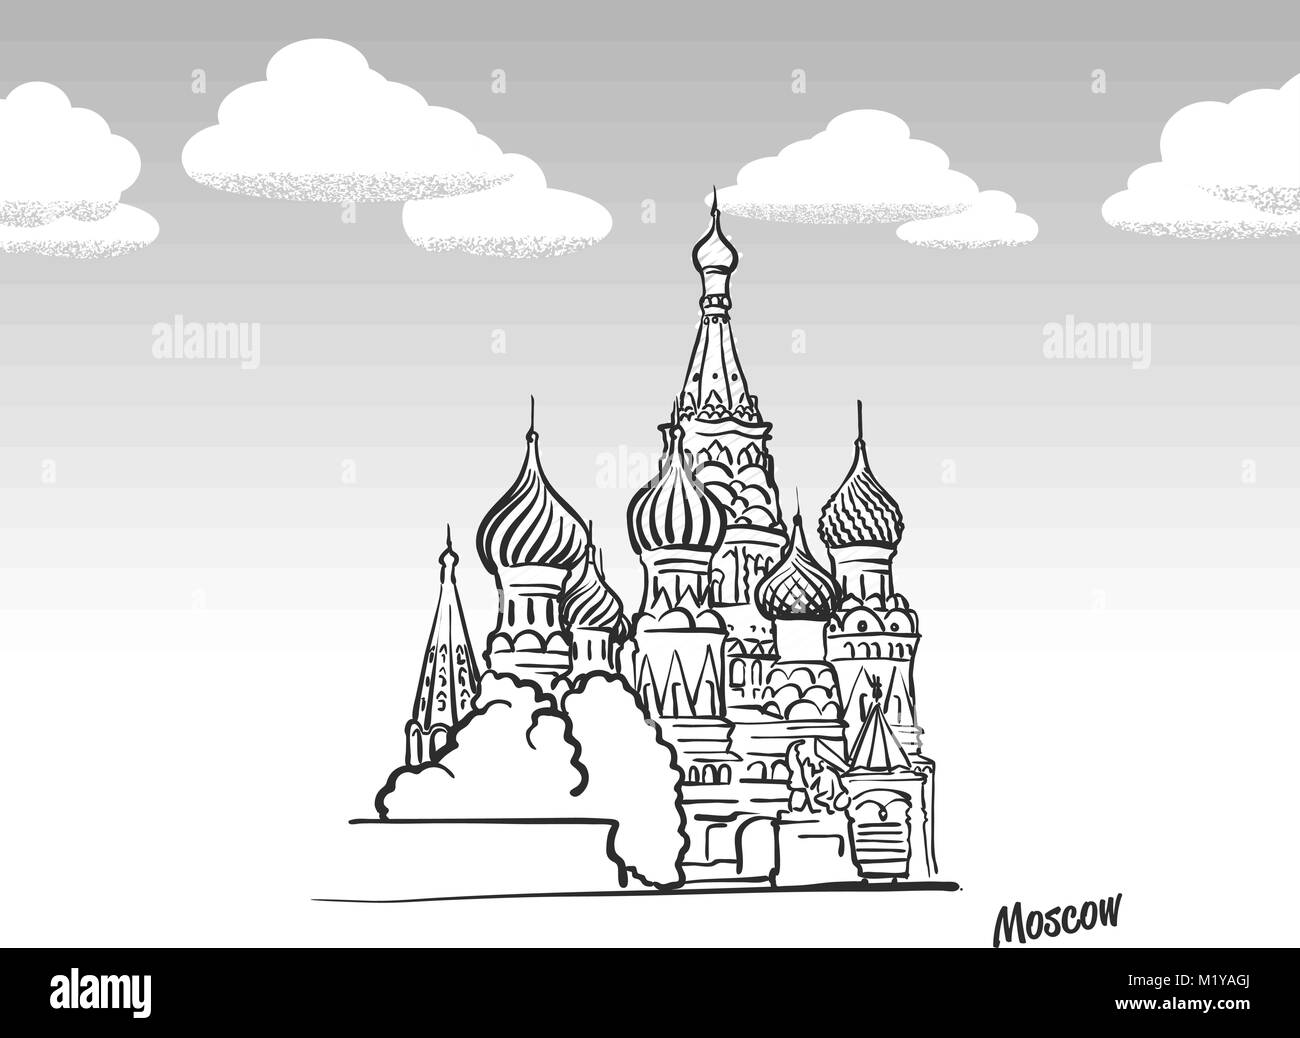 Moskau, Russland Wahrzeichen Skizze. Lineart Zeichnung von Hand. Grußkarte Symbol mit Titel, Vektor, Abbildung Stock Vektor